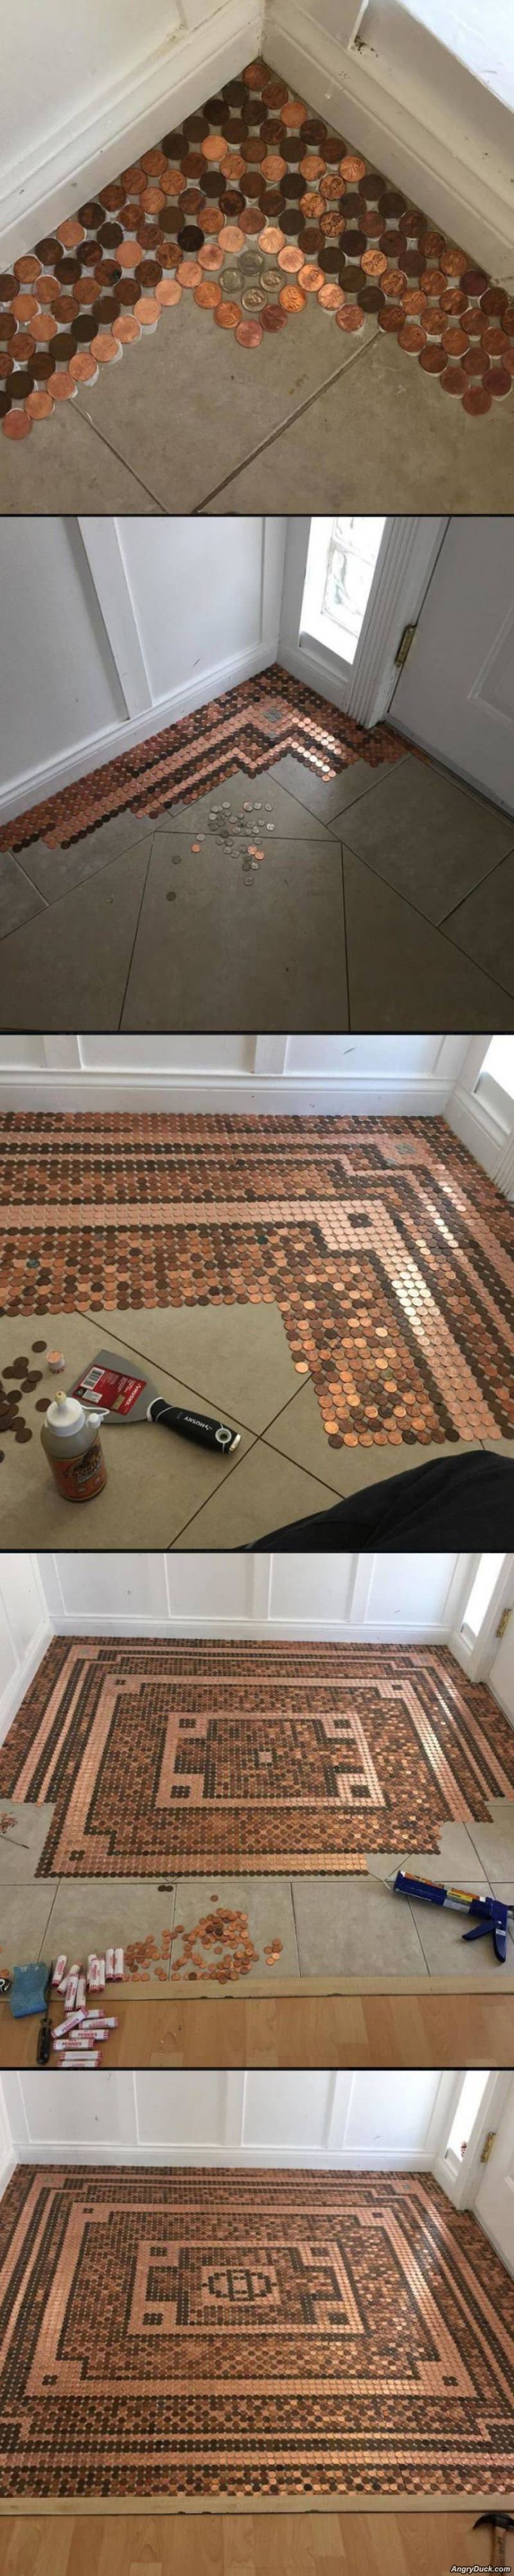 Penny Floor